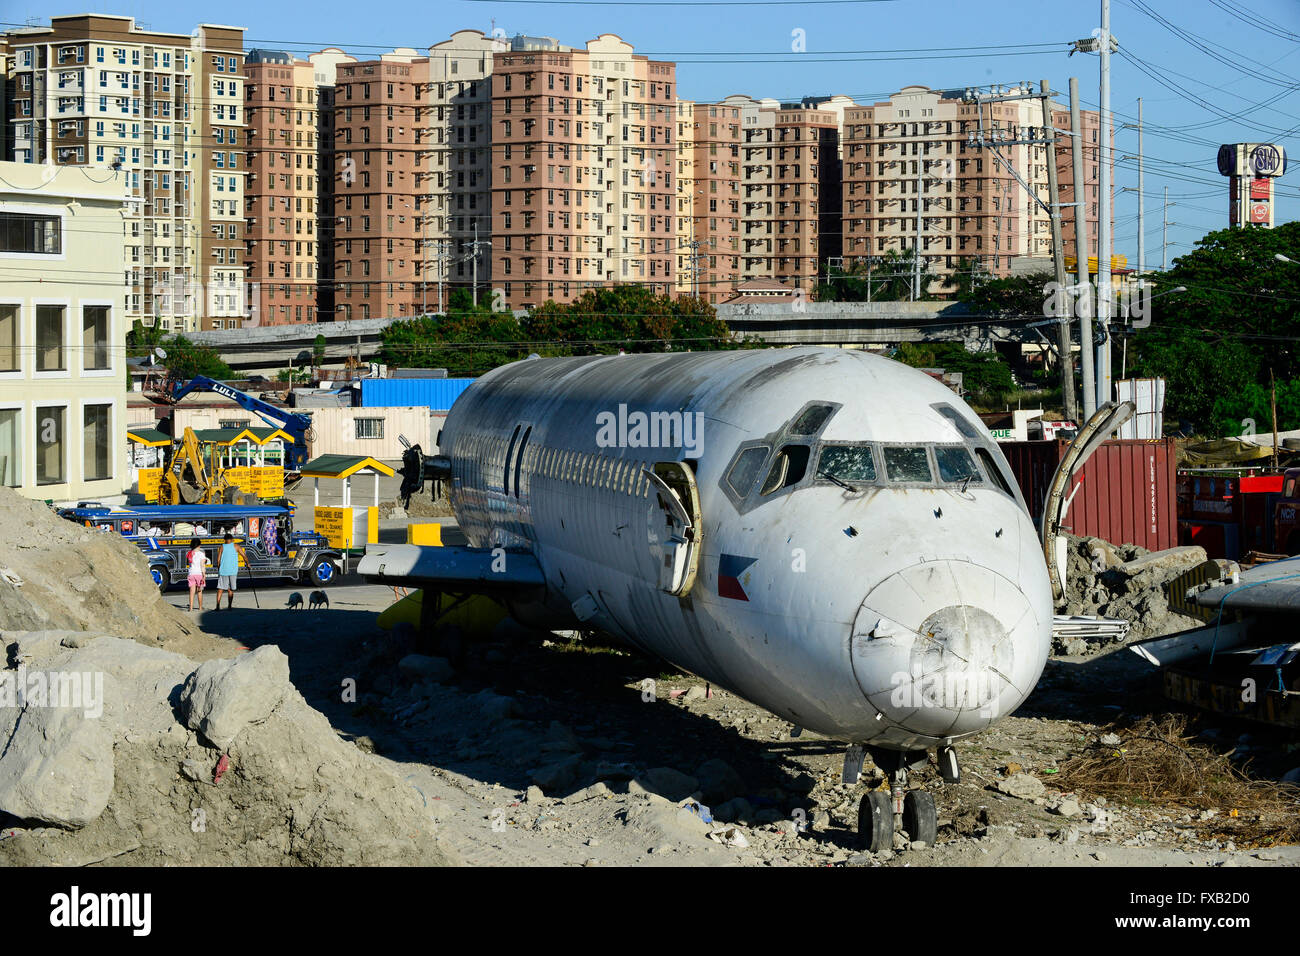 Filippine, Manila, Parañaque City, oggetto di dumping aereo McDonnell Douglas DC-9 della compagnia aerea filippina Cebu Pacific, dietro la torre appartamento Foto Stock